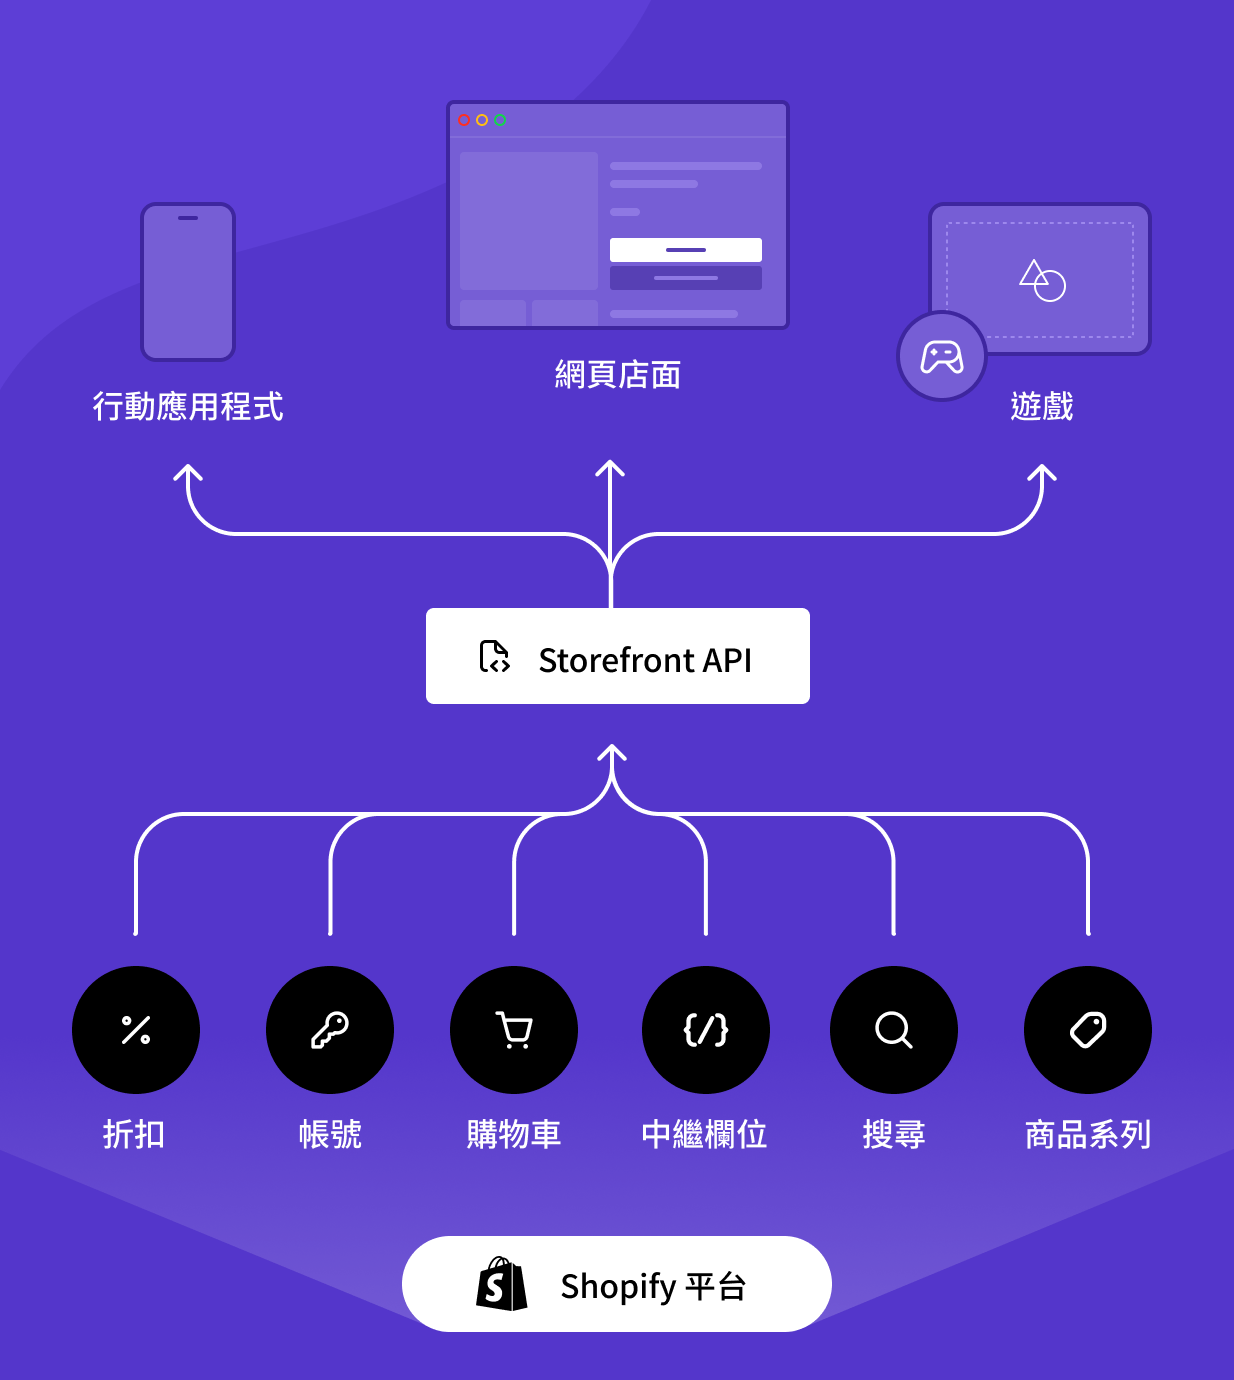 圖表呈現出 Shopify 的 Storefront API 能與任何商業技術堆疊搭配運作的情況